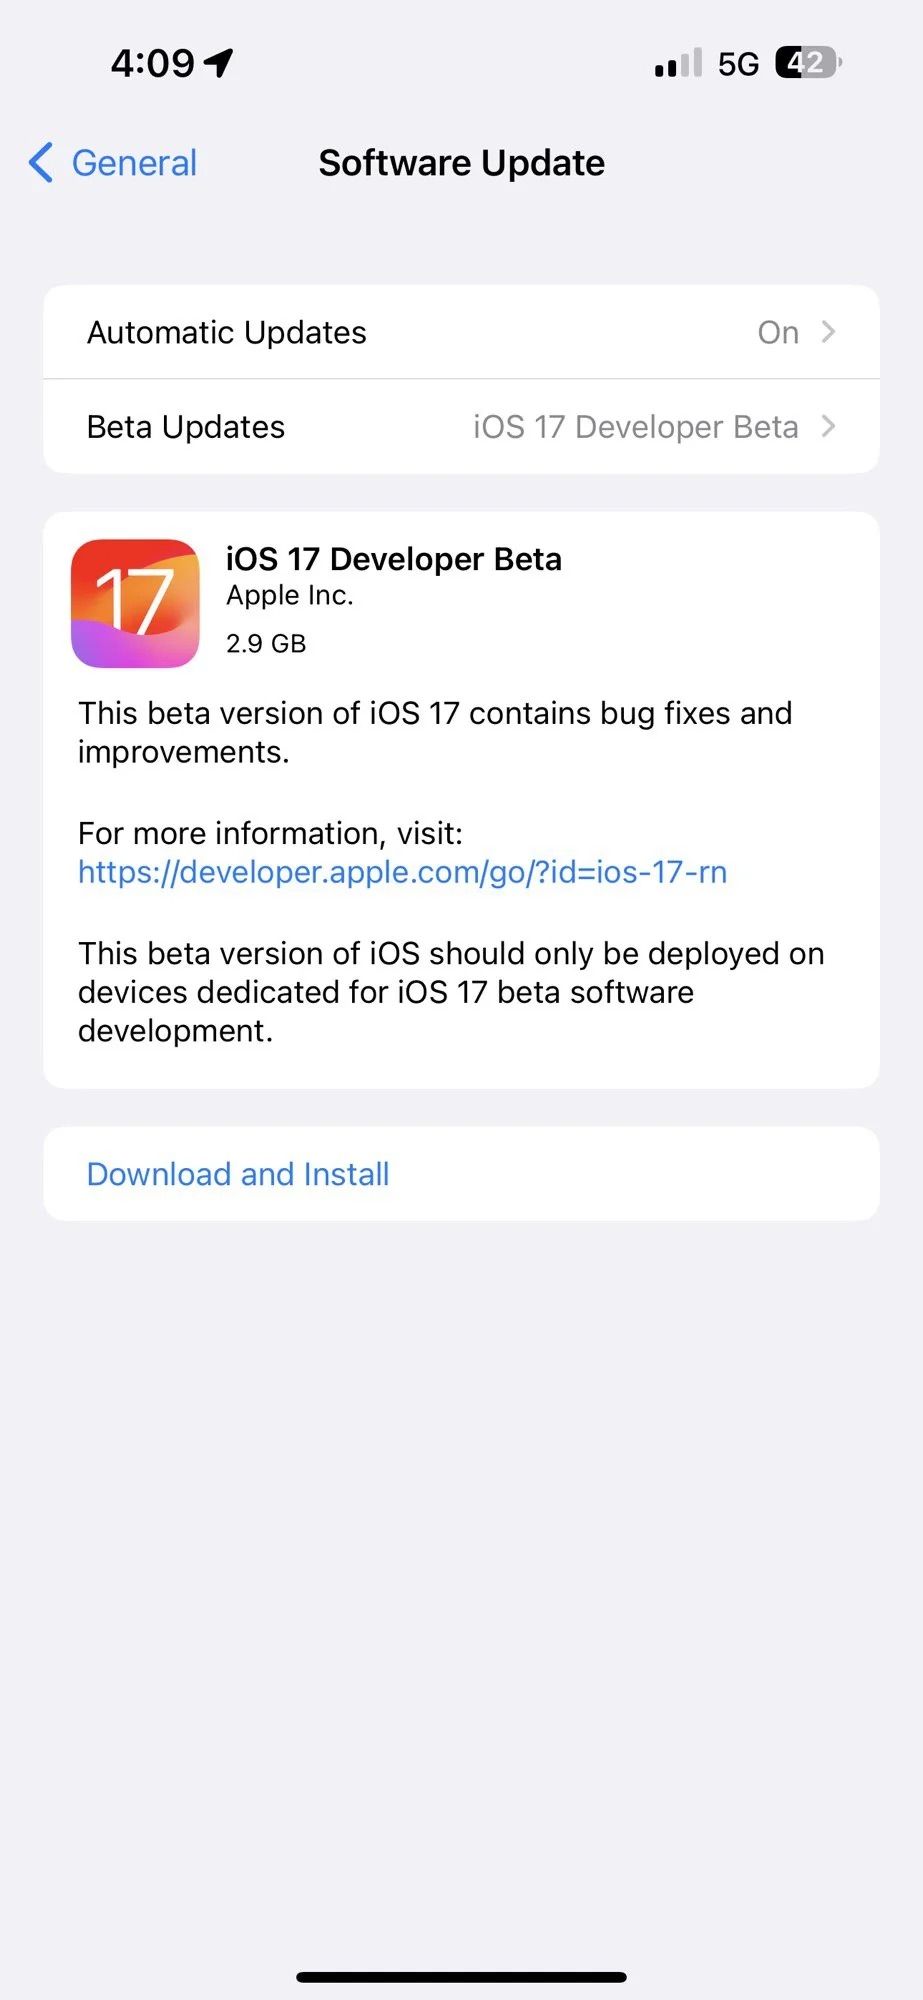 iOS 17 developer beta install